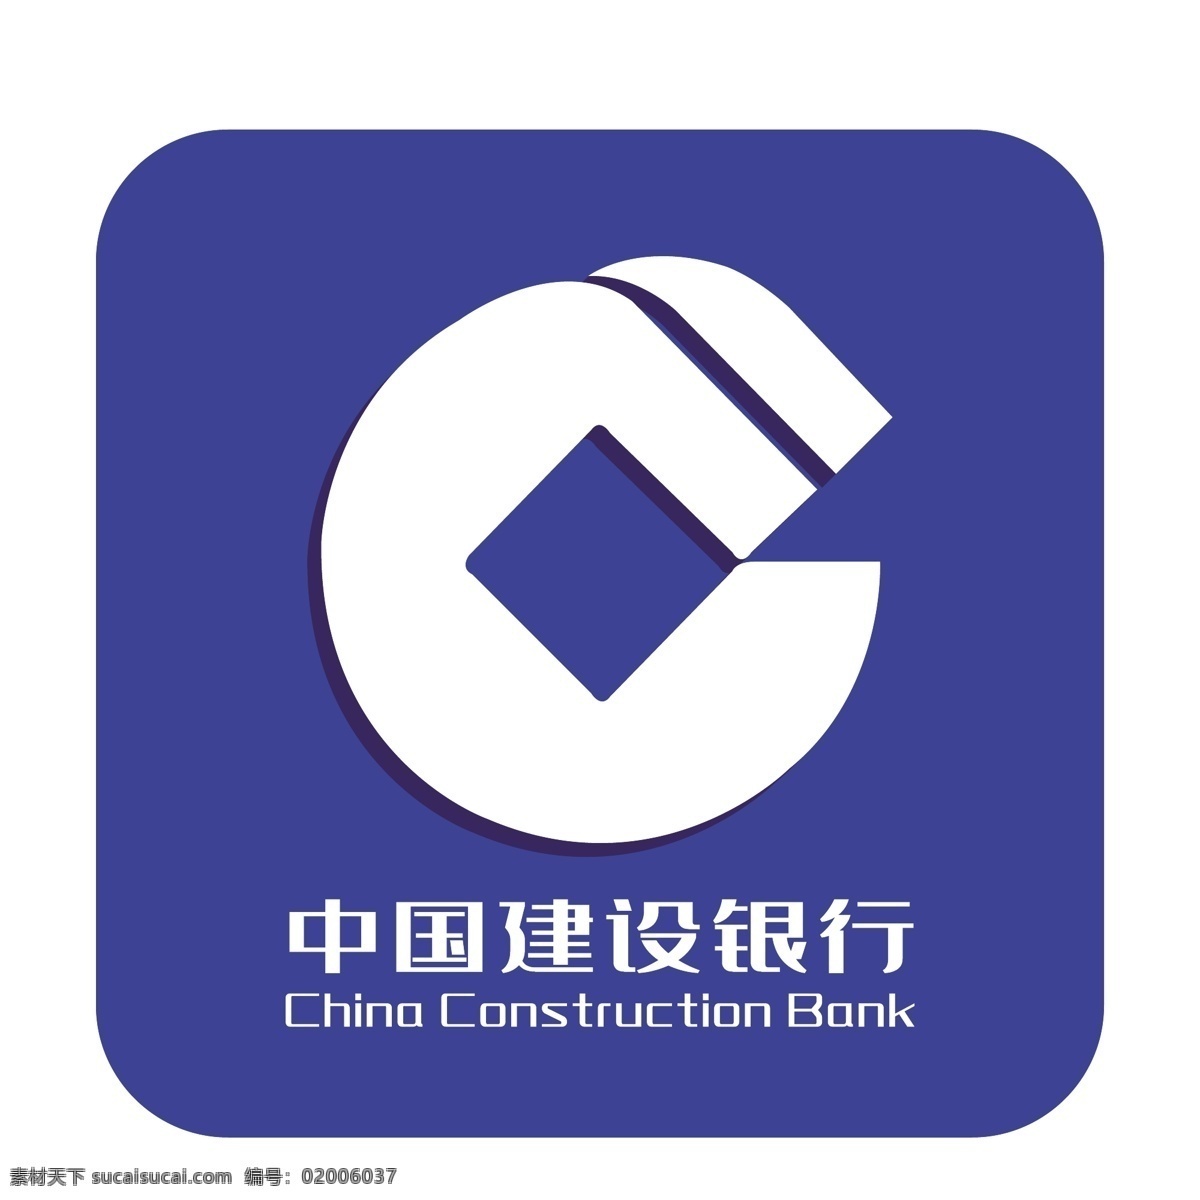 中国建设银行 d 蓝色 logo 图标 2.5d logo图标 贷款机构 货币信贷 矢量银行 金融机构 手机app 免抠图png 千库原创